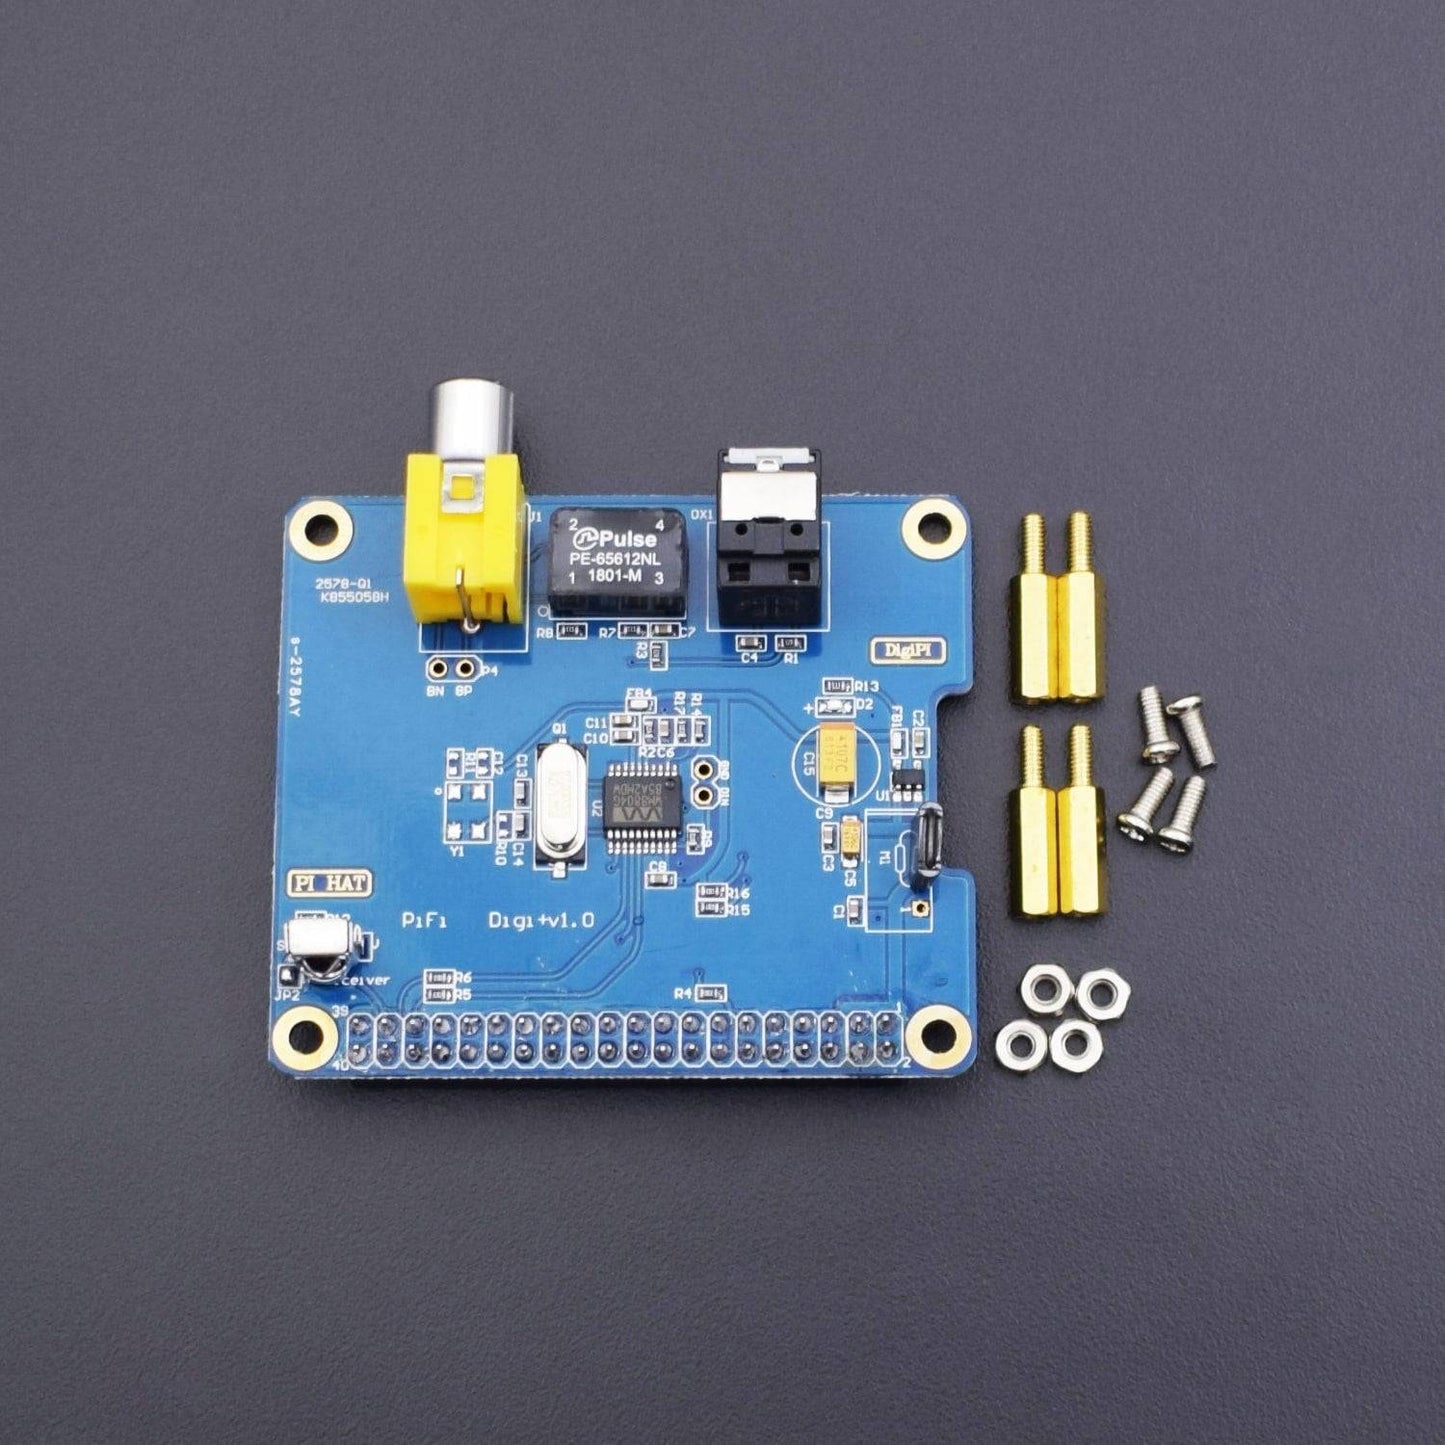 HIFI DiGi+ Digital Sound Card For Raspberry Pi A+/B+ -RS113 - REES52